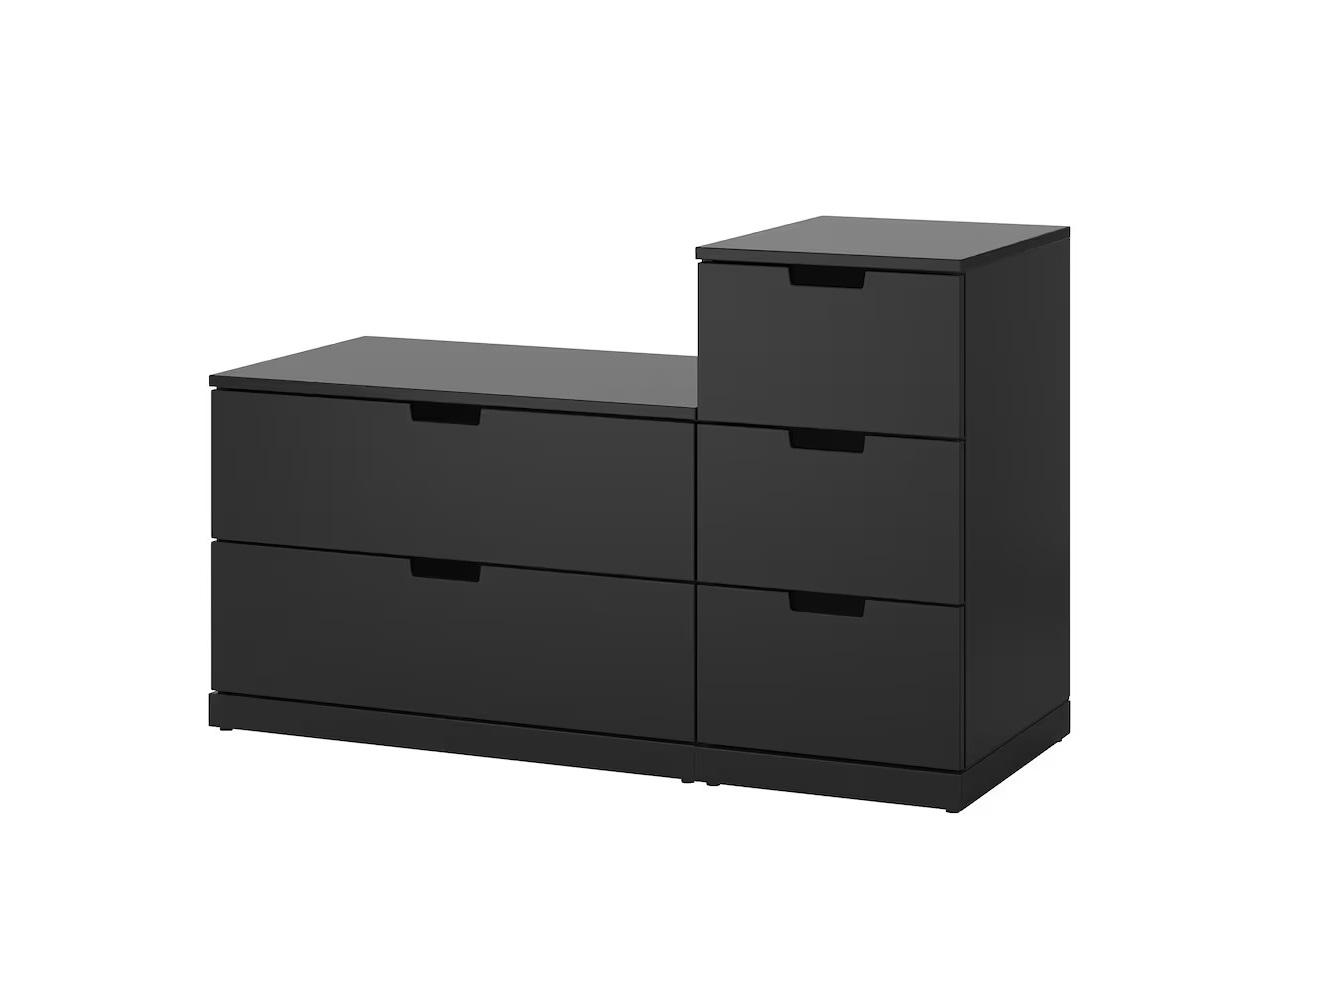 Комод Нордли 14 black ИКЕА (IKEA) изображение товара